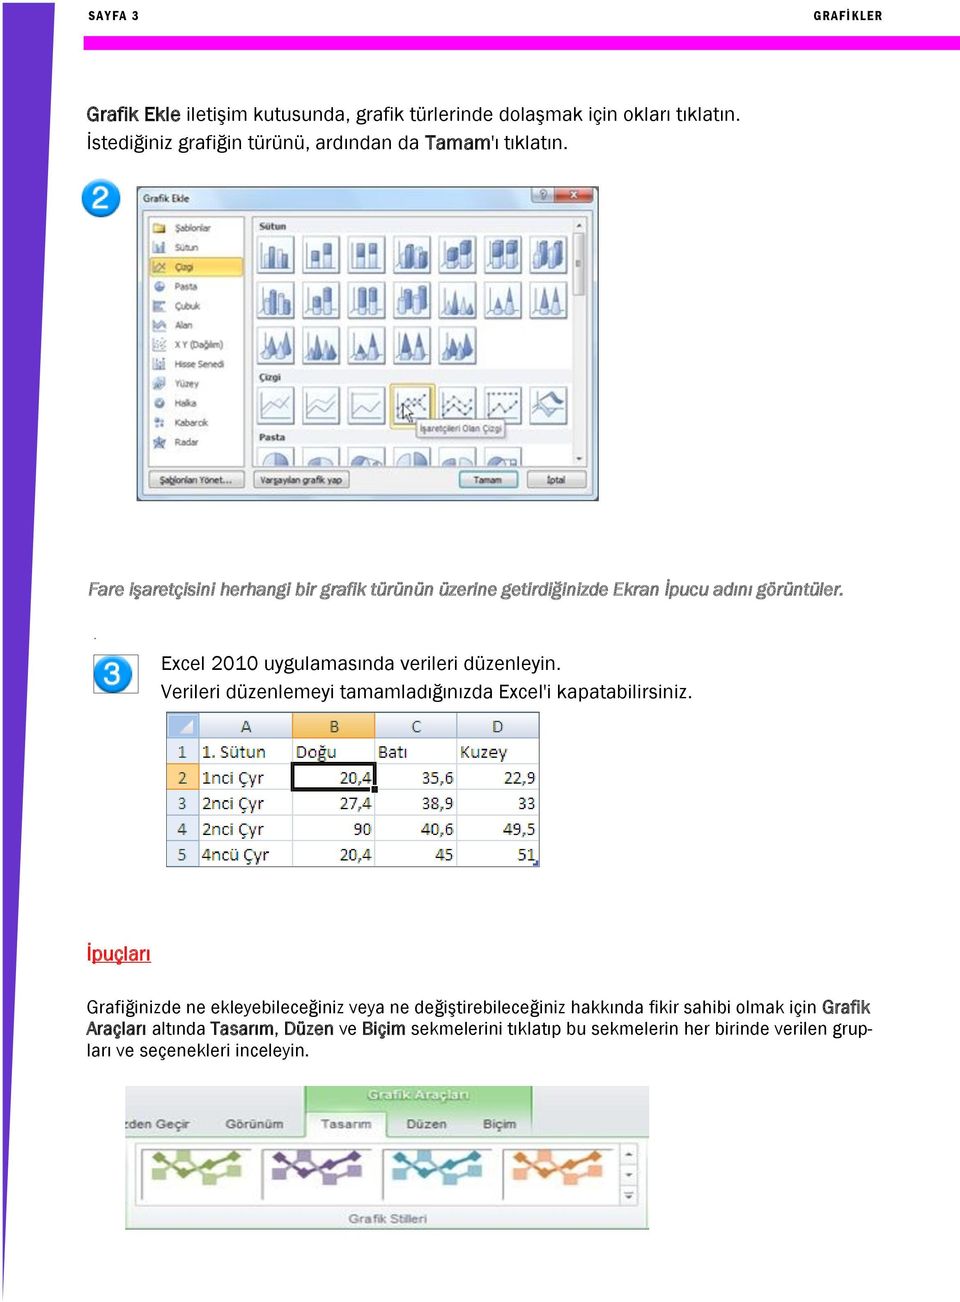 Fare işaretçisini herhangi bir grafik türünün üzerine getirdiğinizde Ekran İpucu adını görüntüler.. Excel 2010 uygulamasında verileri düzenleyin.